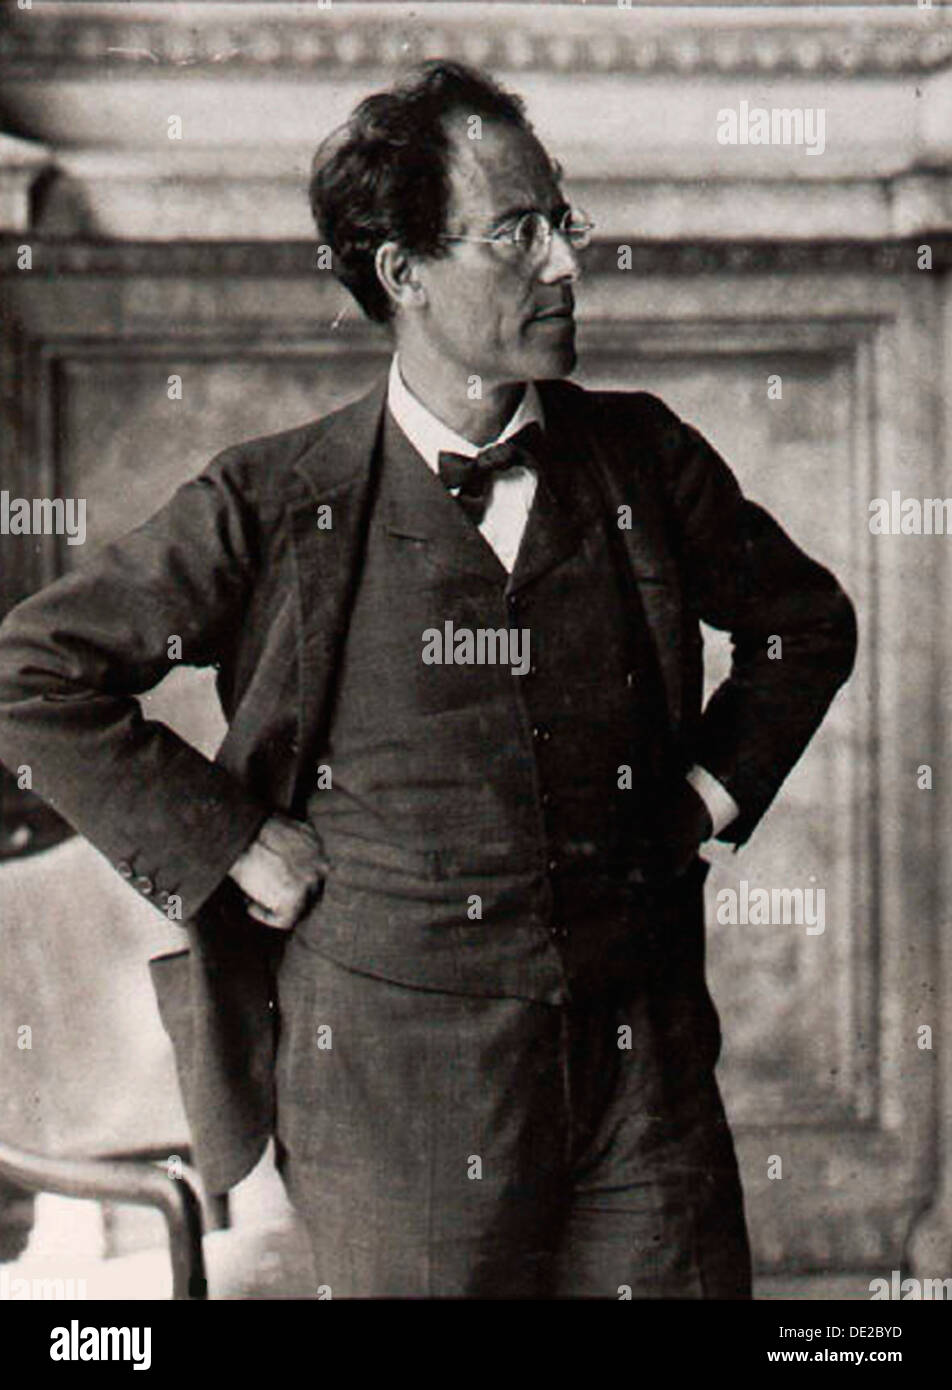 Gustav Mahler, il compositore austriaco e il conduttore, 1900s. Artista: Anon Foto Stock